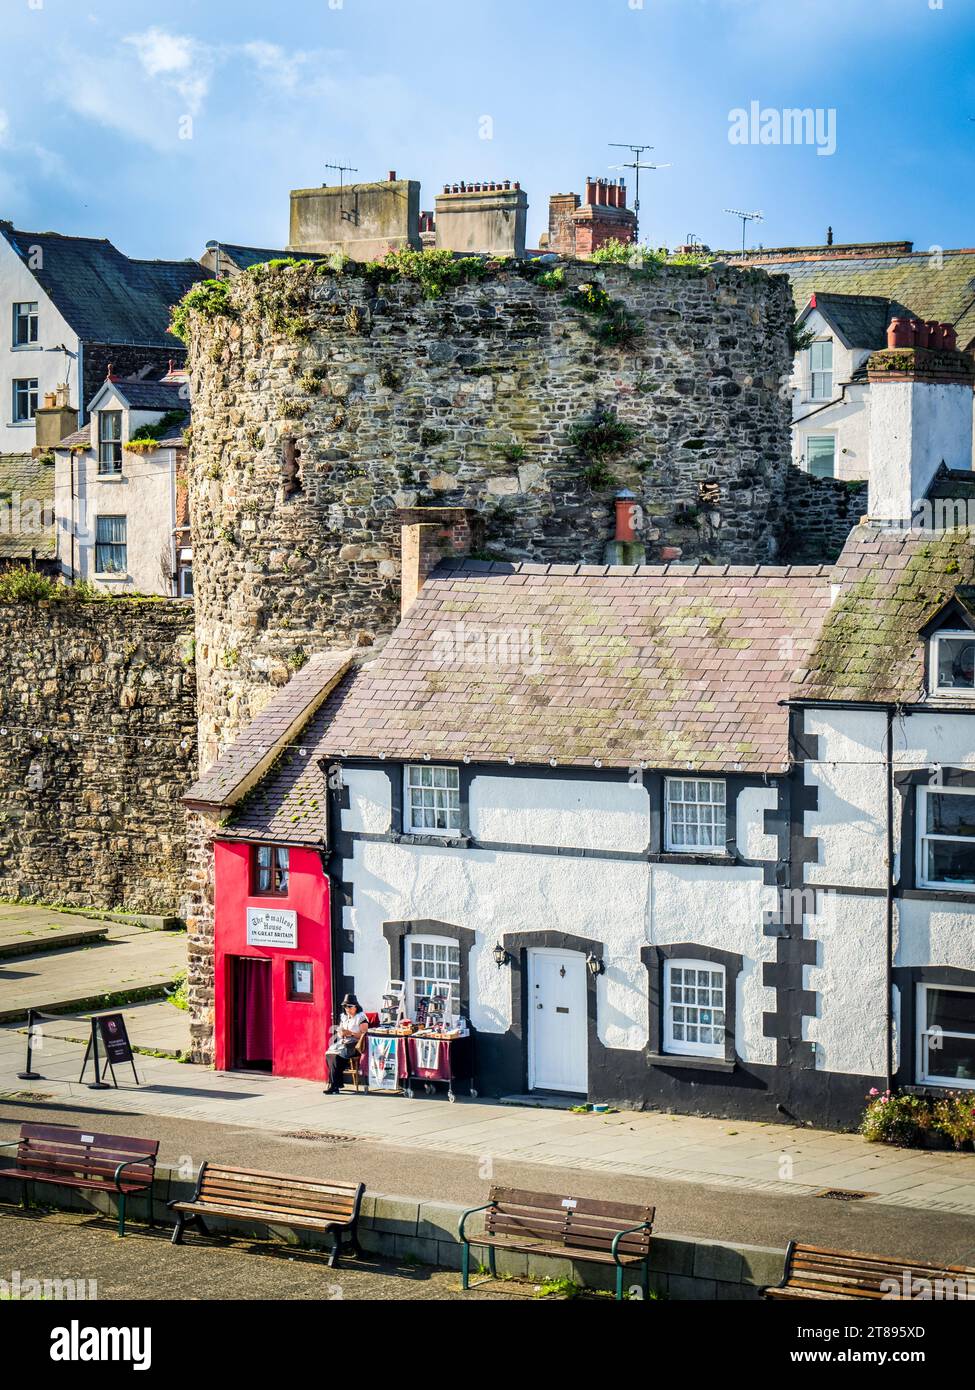 29 septembre 2023 : Conwy, pays de Galles du Nord - maisons mitoyennes construites le long du quai au bord de la rivière, contre les murs de la ville du 13e siècle de Conwy, par un bel automne Banque D'Images